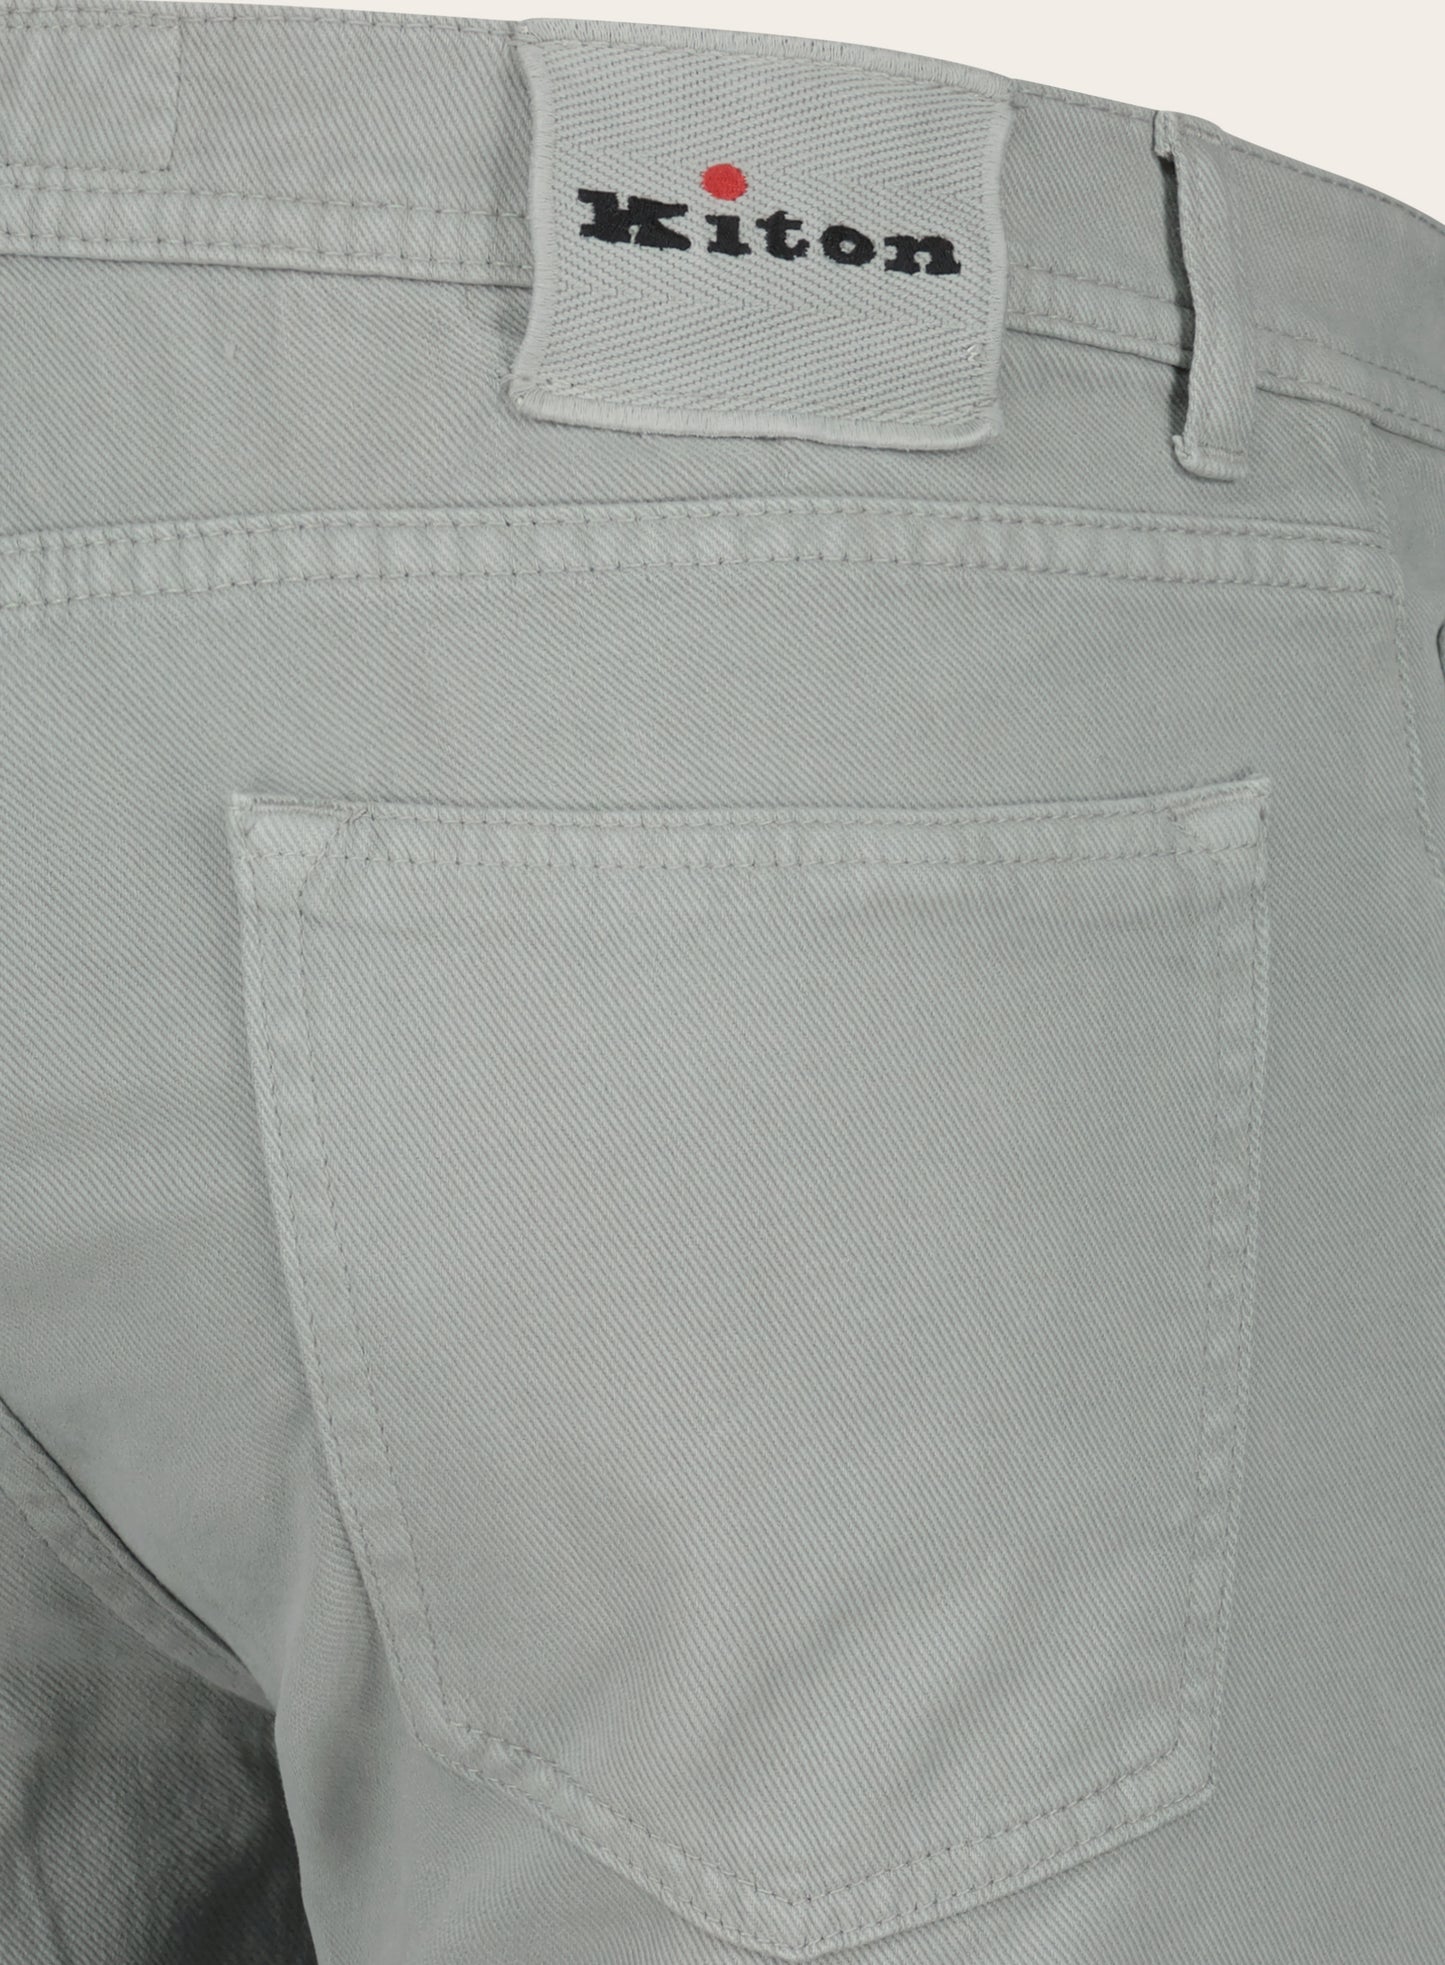 Slim-fit jeans | Grijs